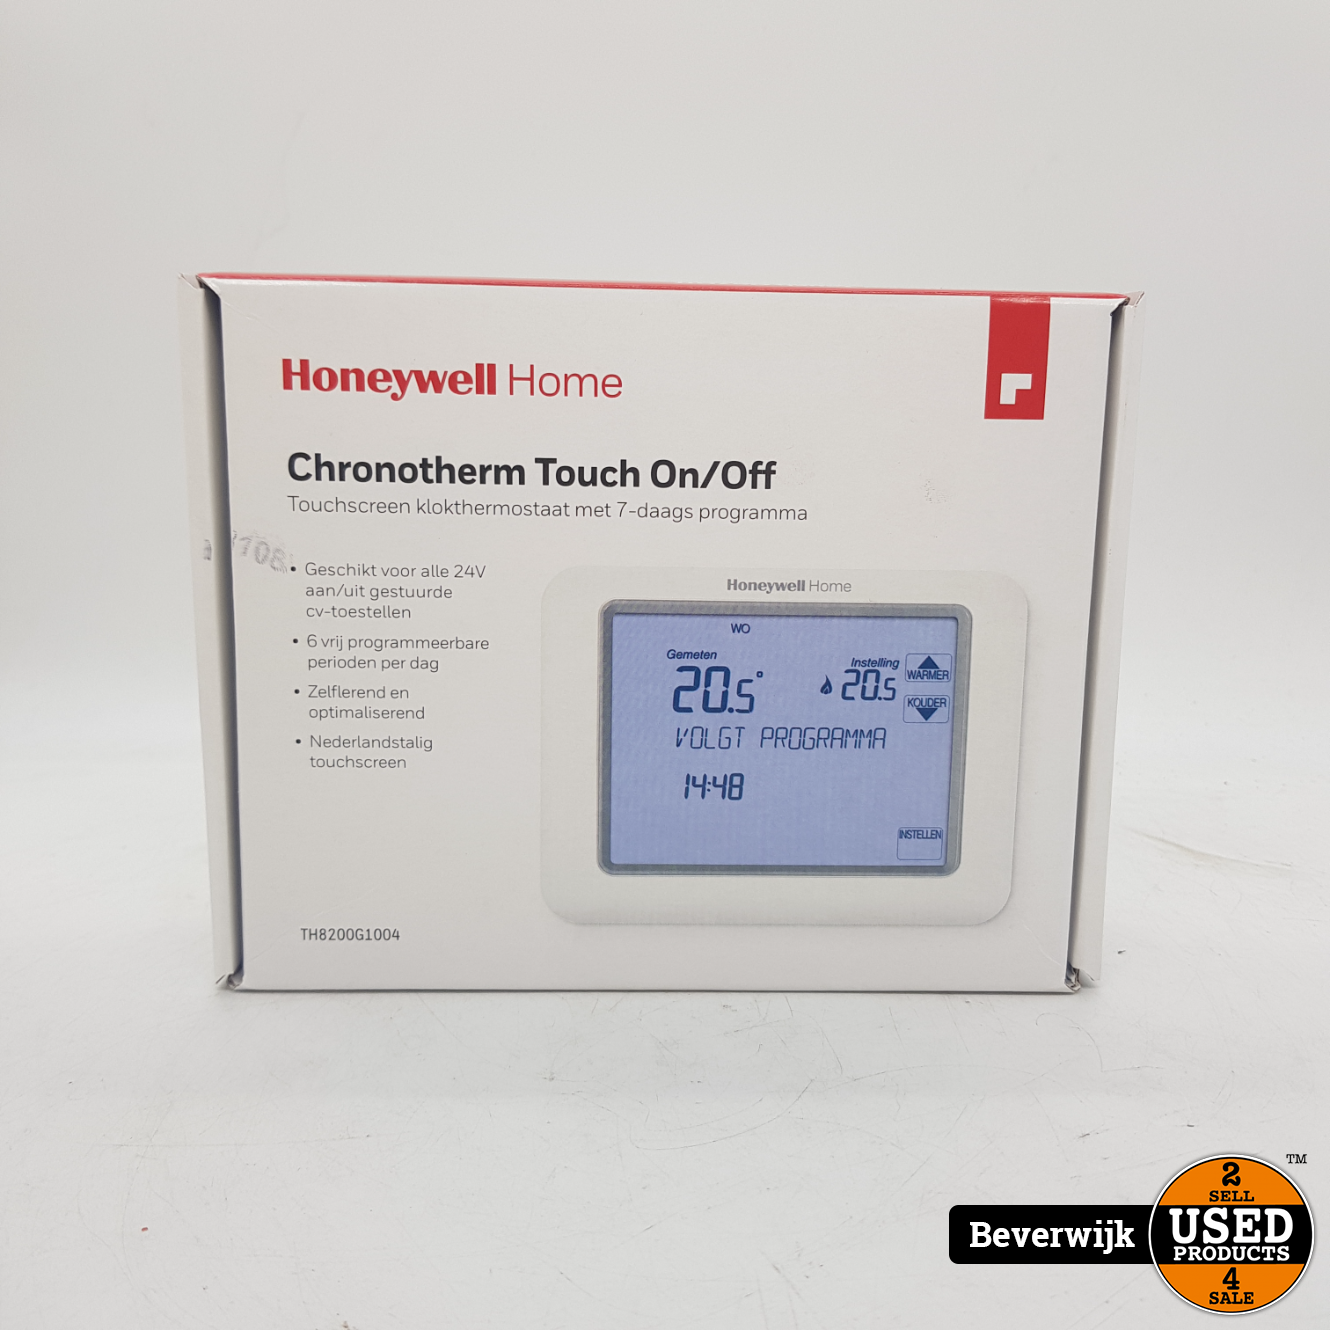 Varen zwart Londen Honeywell Home Chronotherm Touch On/Off - Nieuw - Used Products Beverwijk